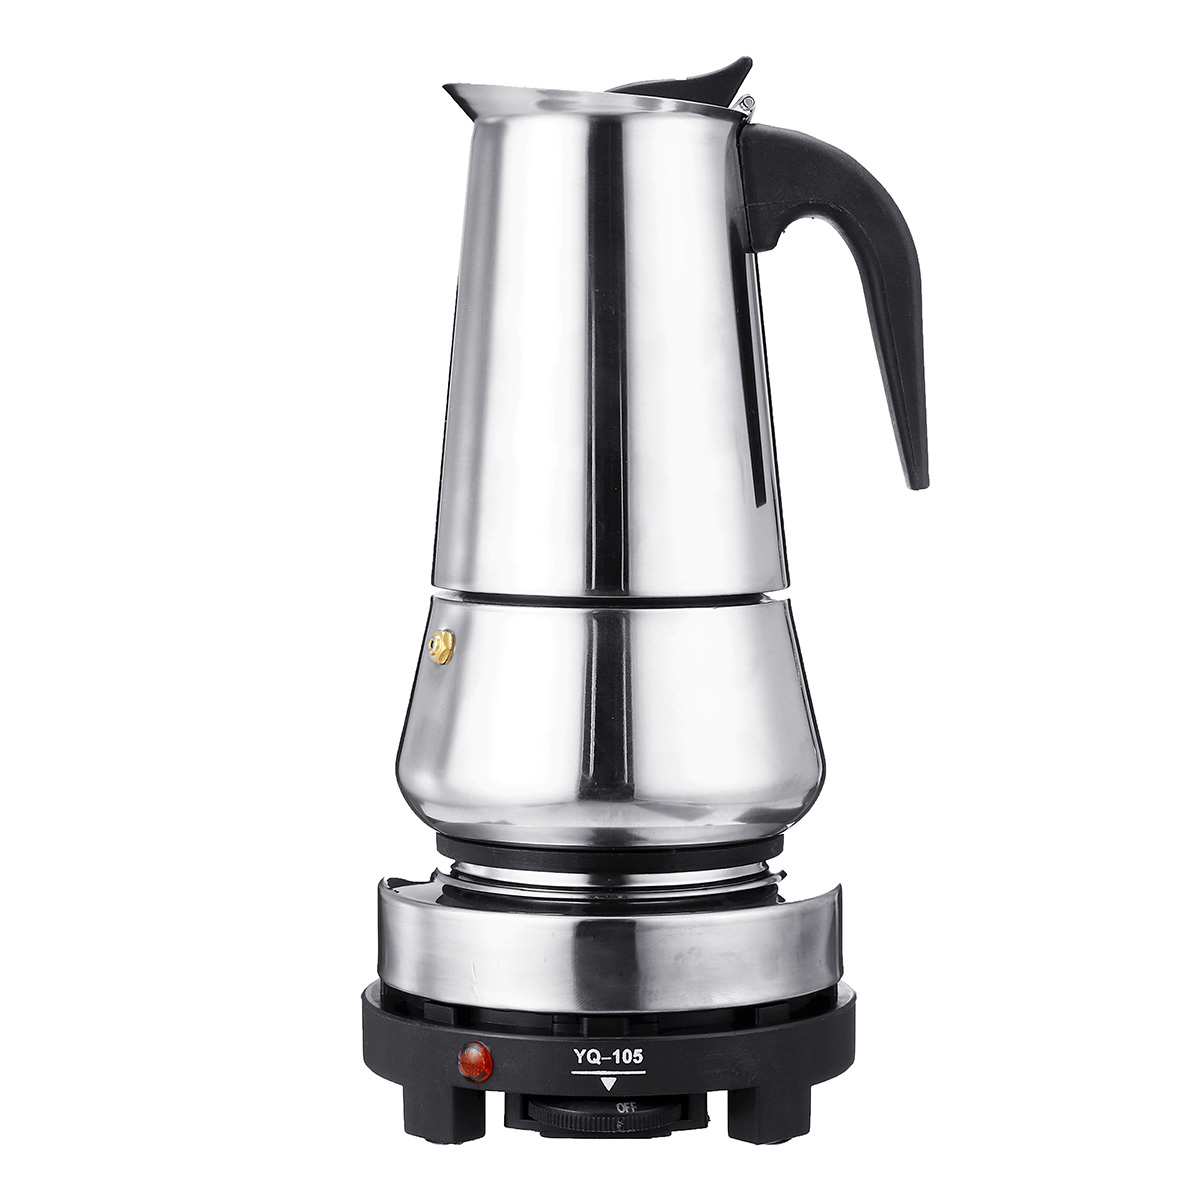 

220V 500W 450ml Portable Coffee Espresso Pot Maker & Electric Stove Home Kitchen Tools